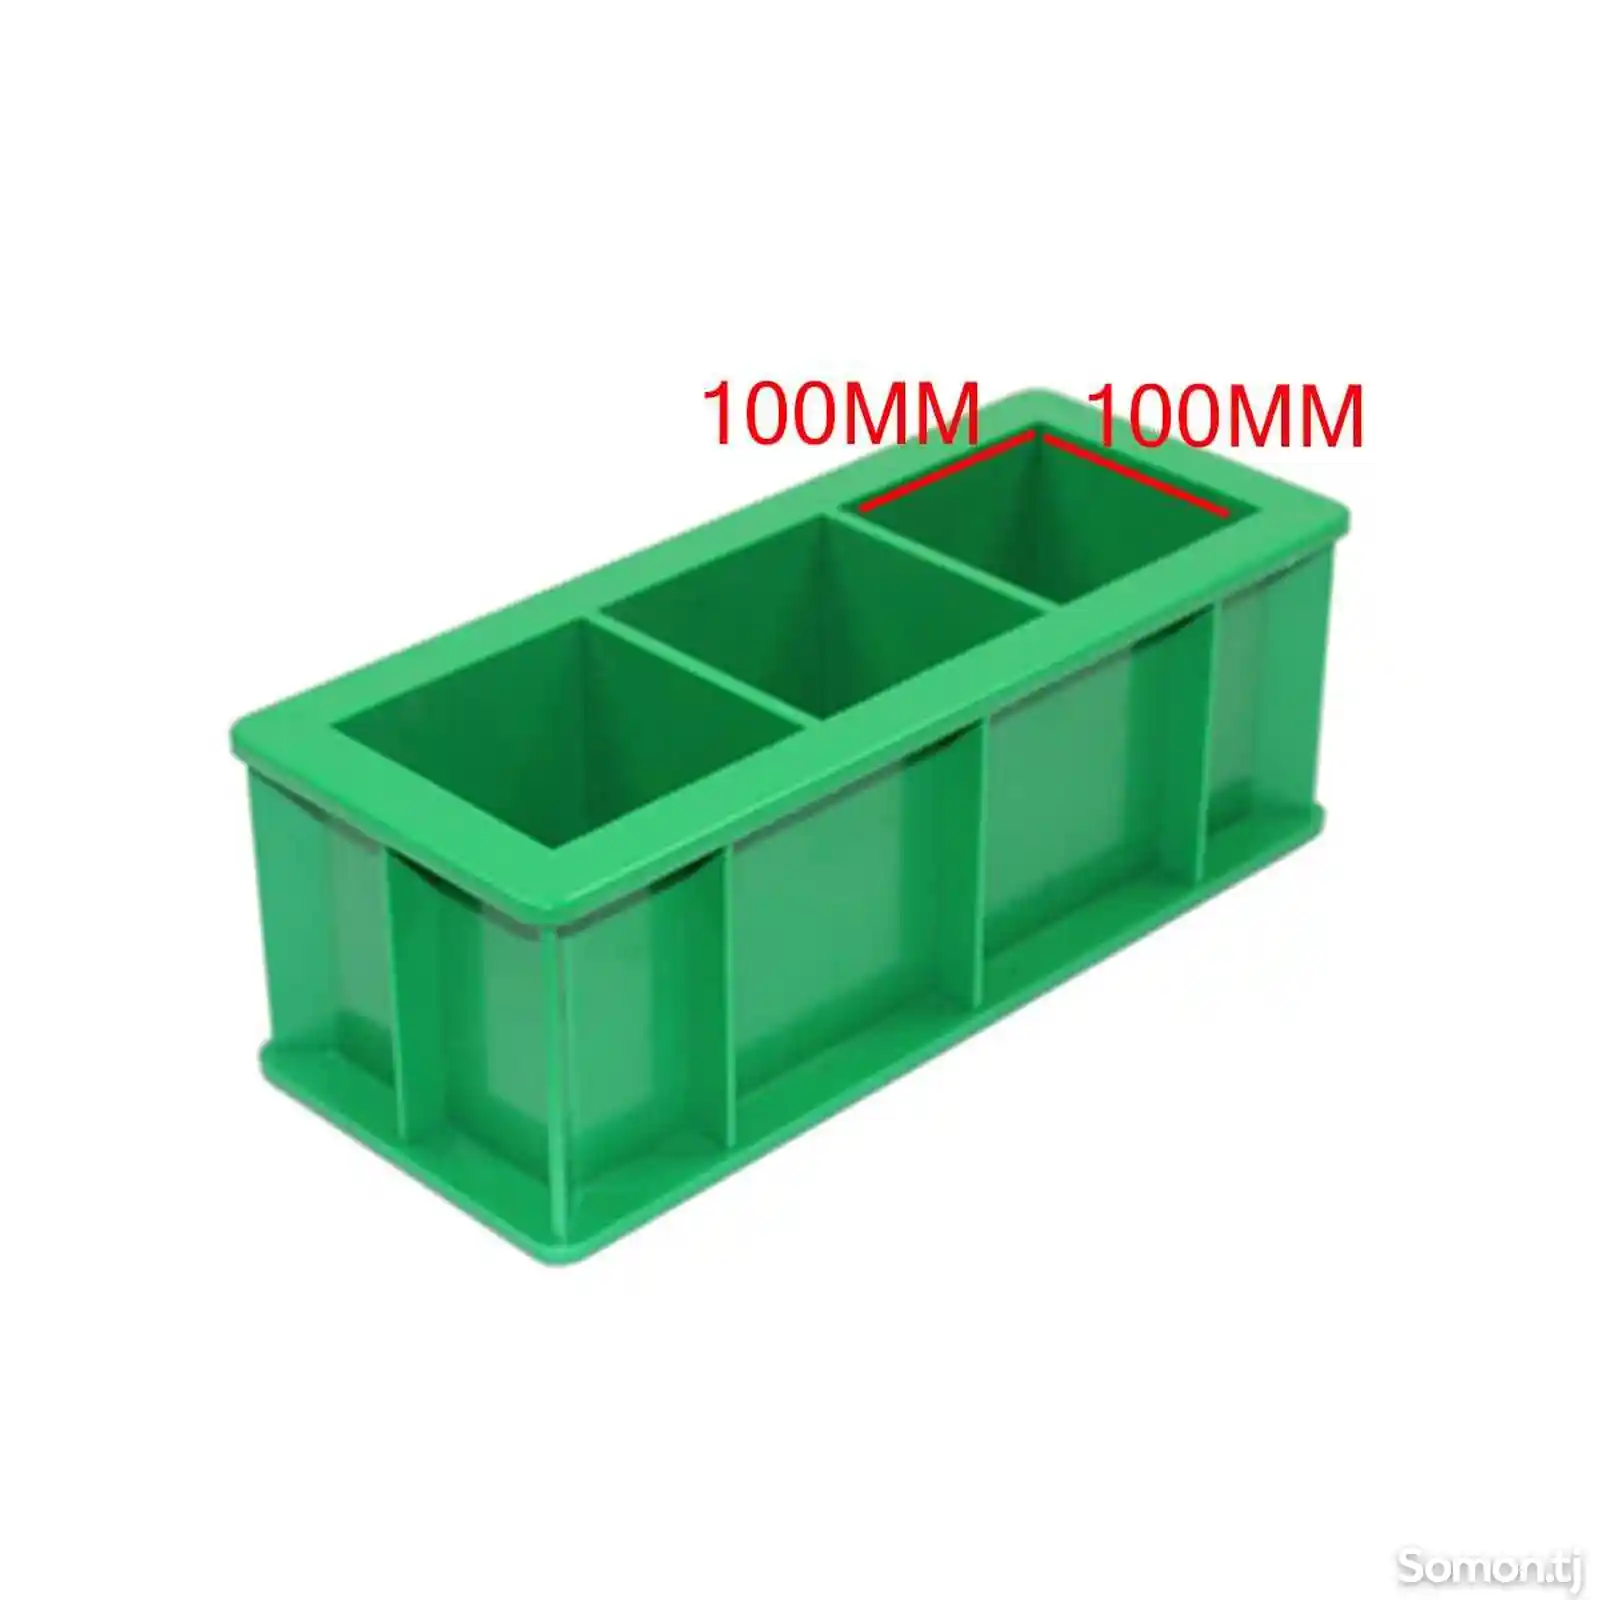 Формы для изготовления контрольных образцов бетона 3ФК-100-5